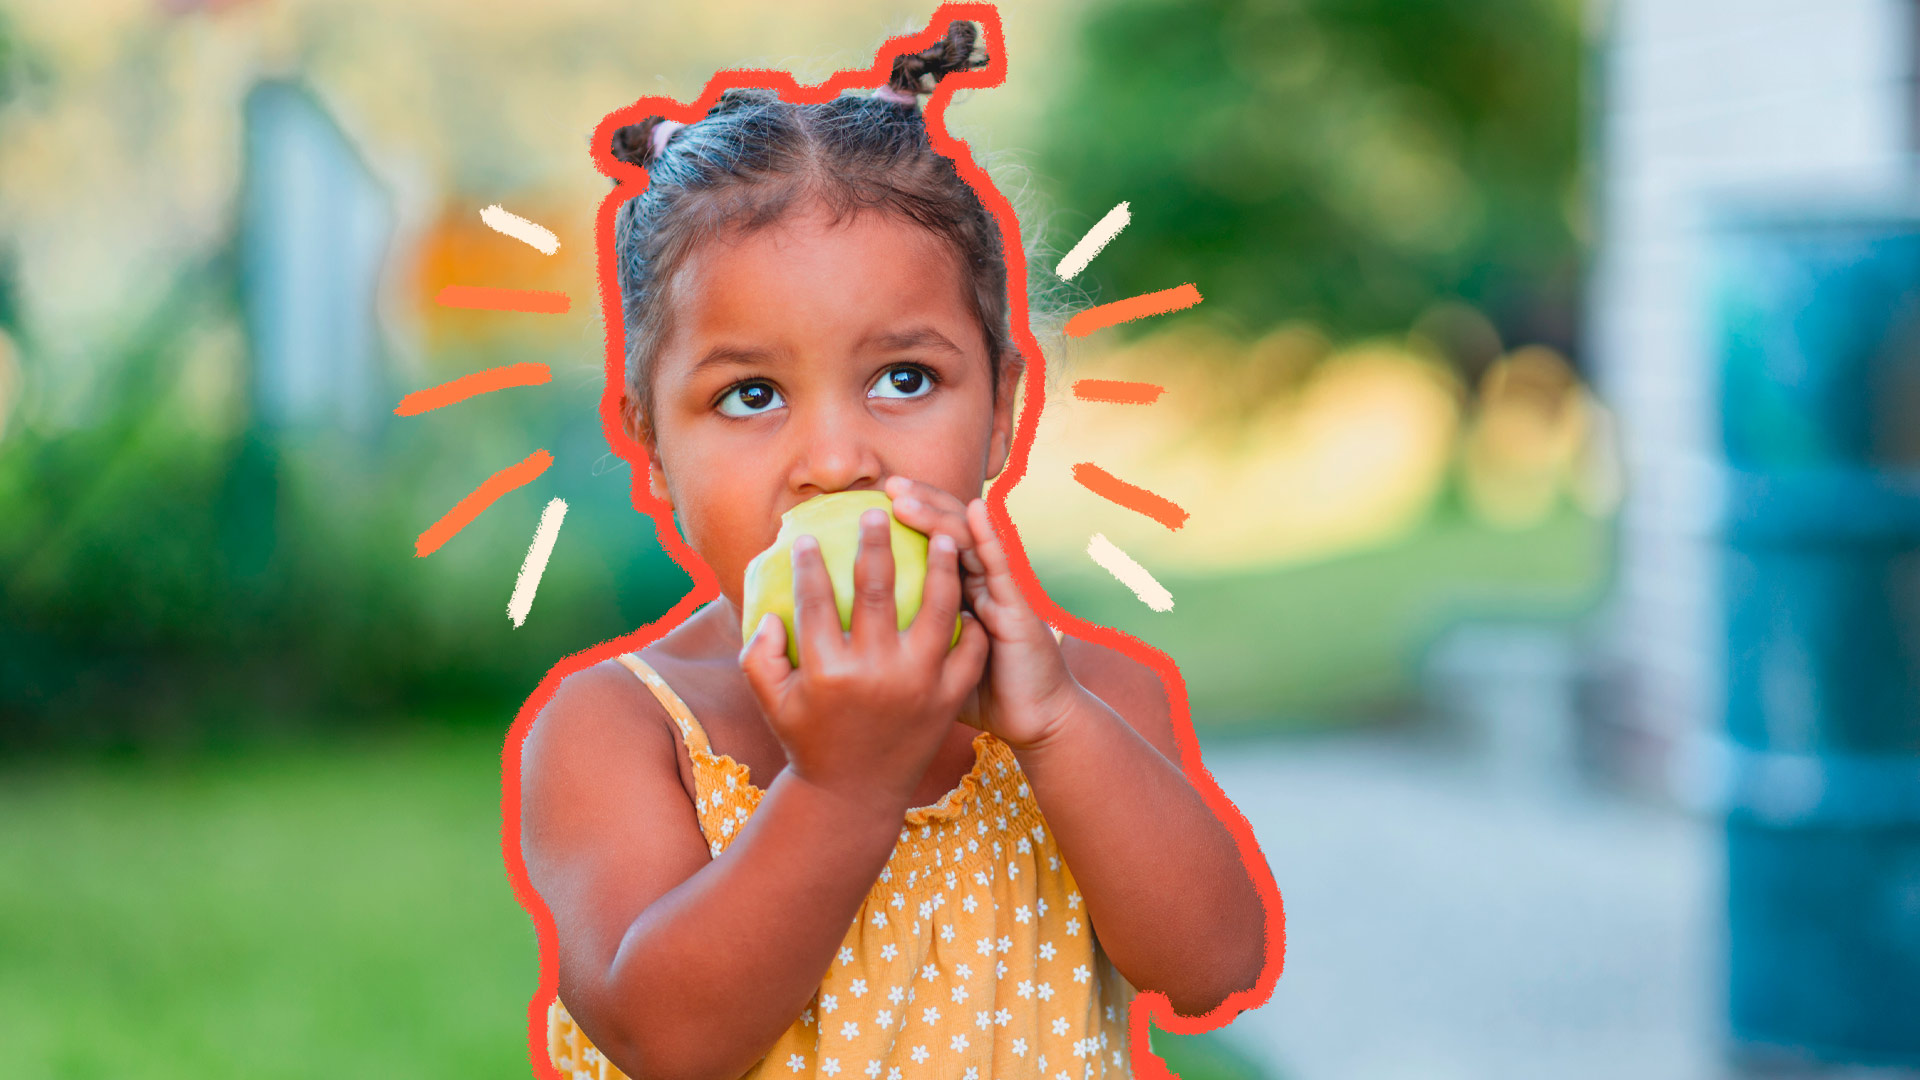 Foto de uma criança que segura uma fruta com as duas mãos e a morde. Ela veste uma blusa com estampa de estrelinhas